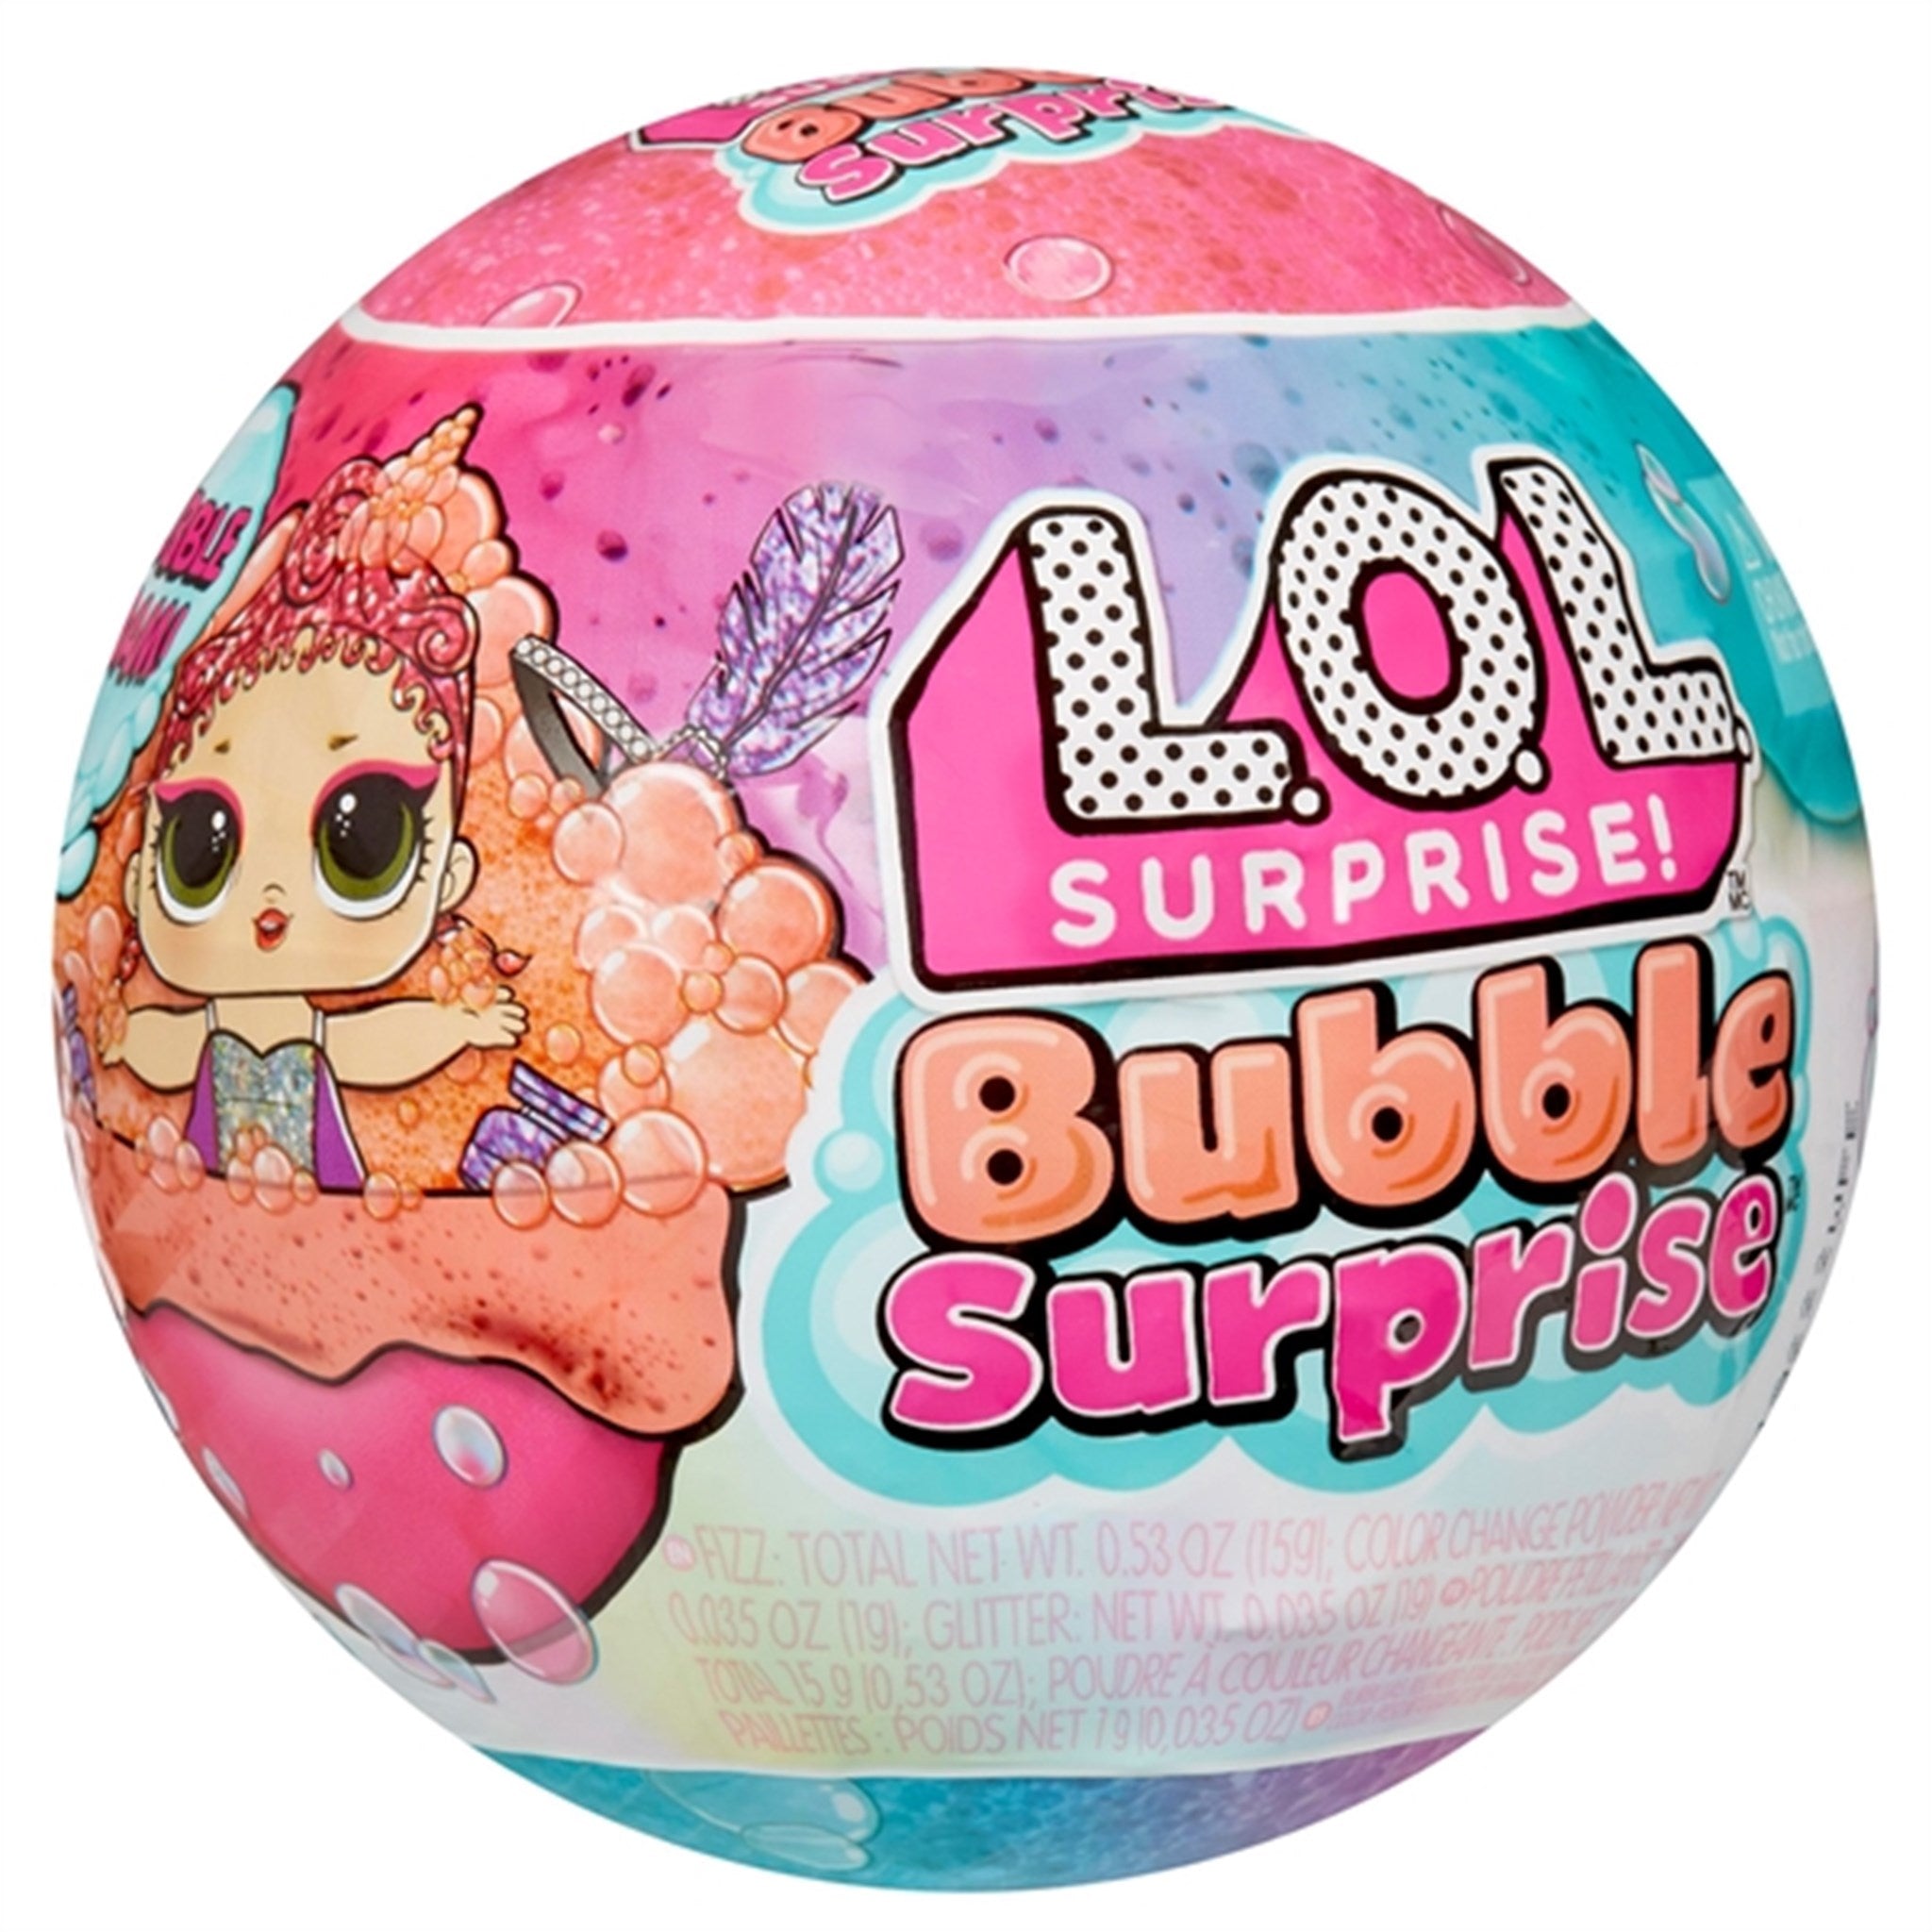 L.O.L. Surprise! Bubble Surprise Doll